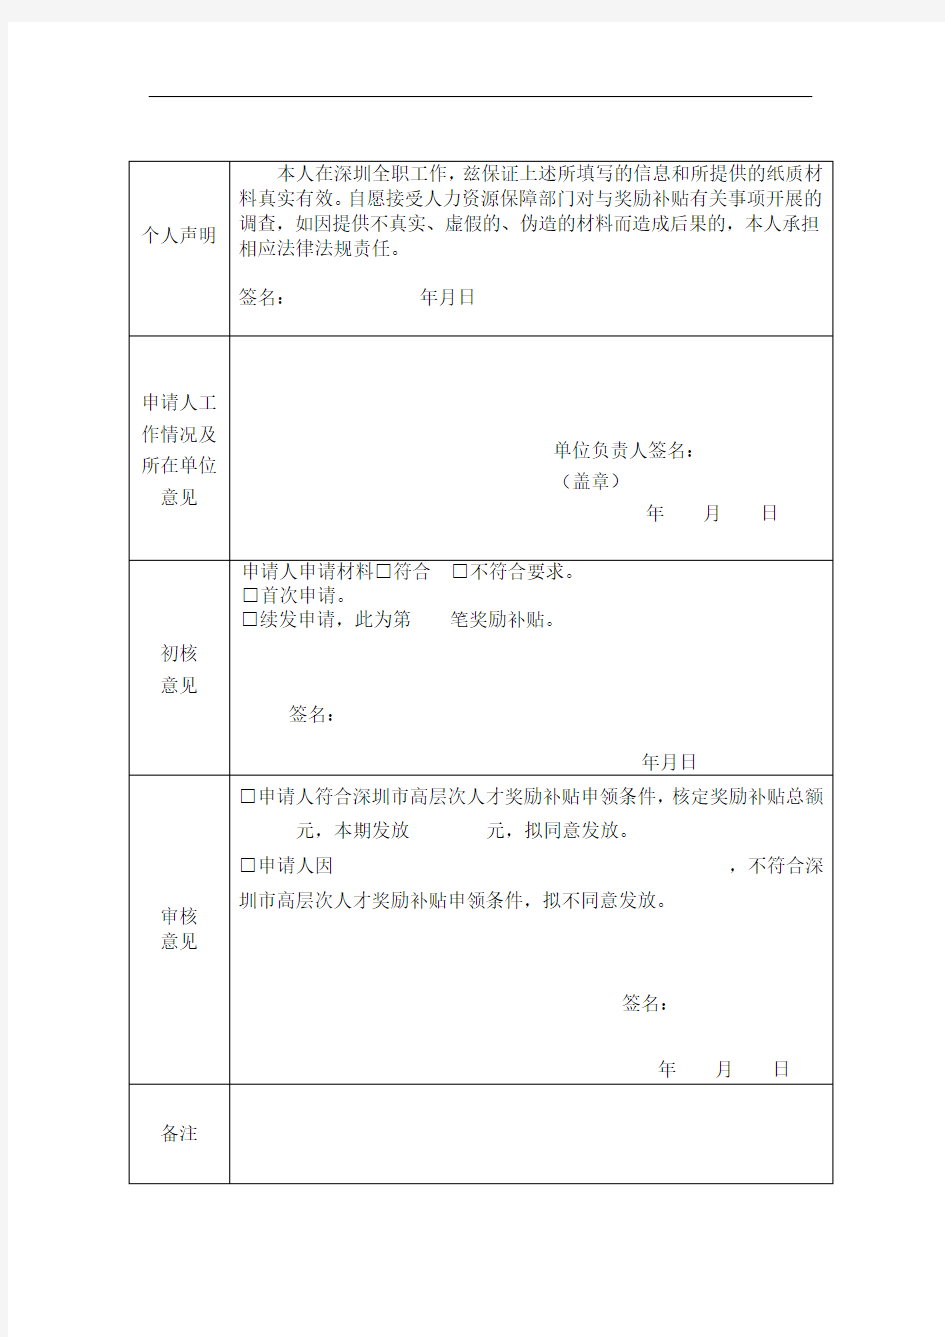 深圳市(国内、海外)高层次人才奖励补贴申请表